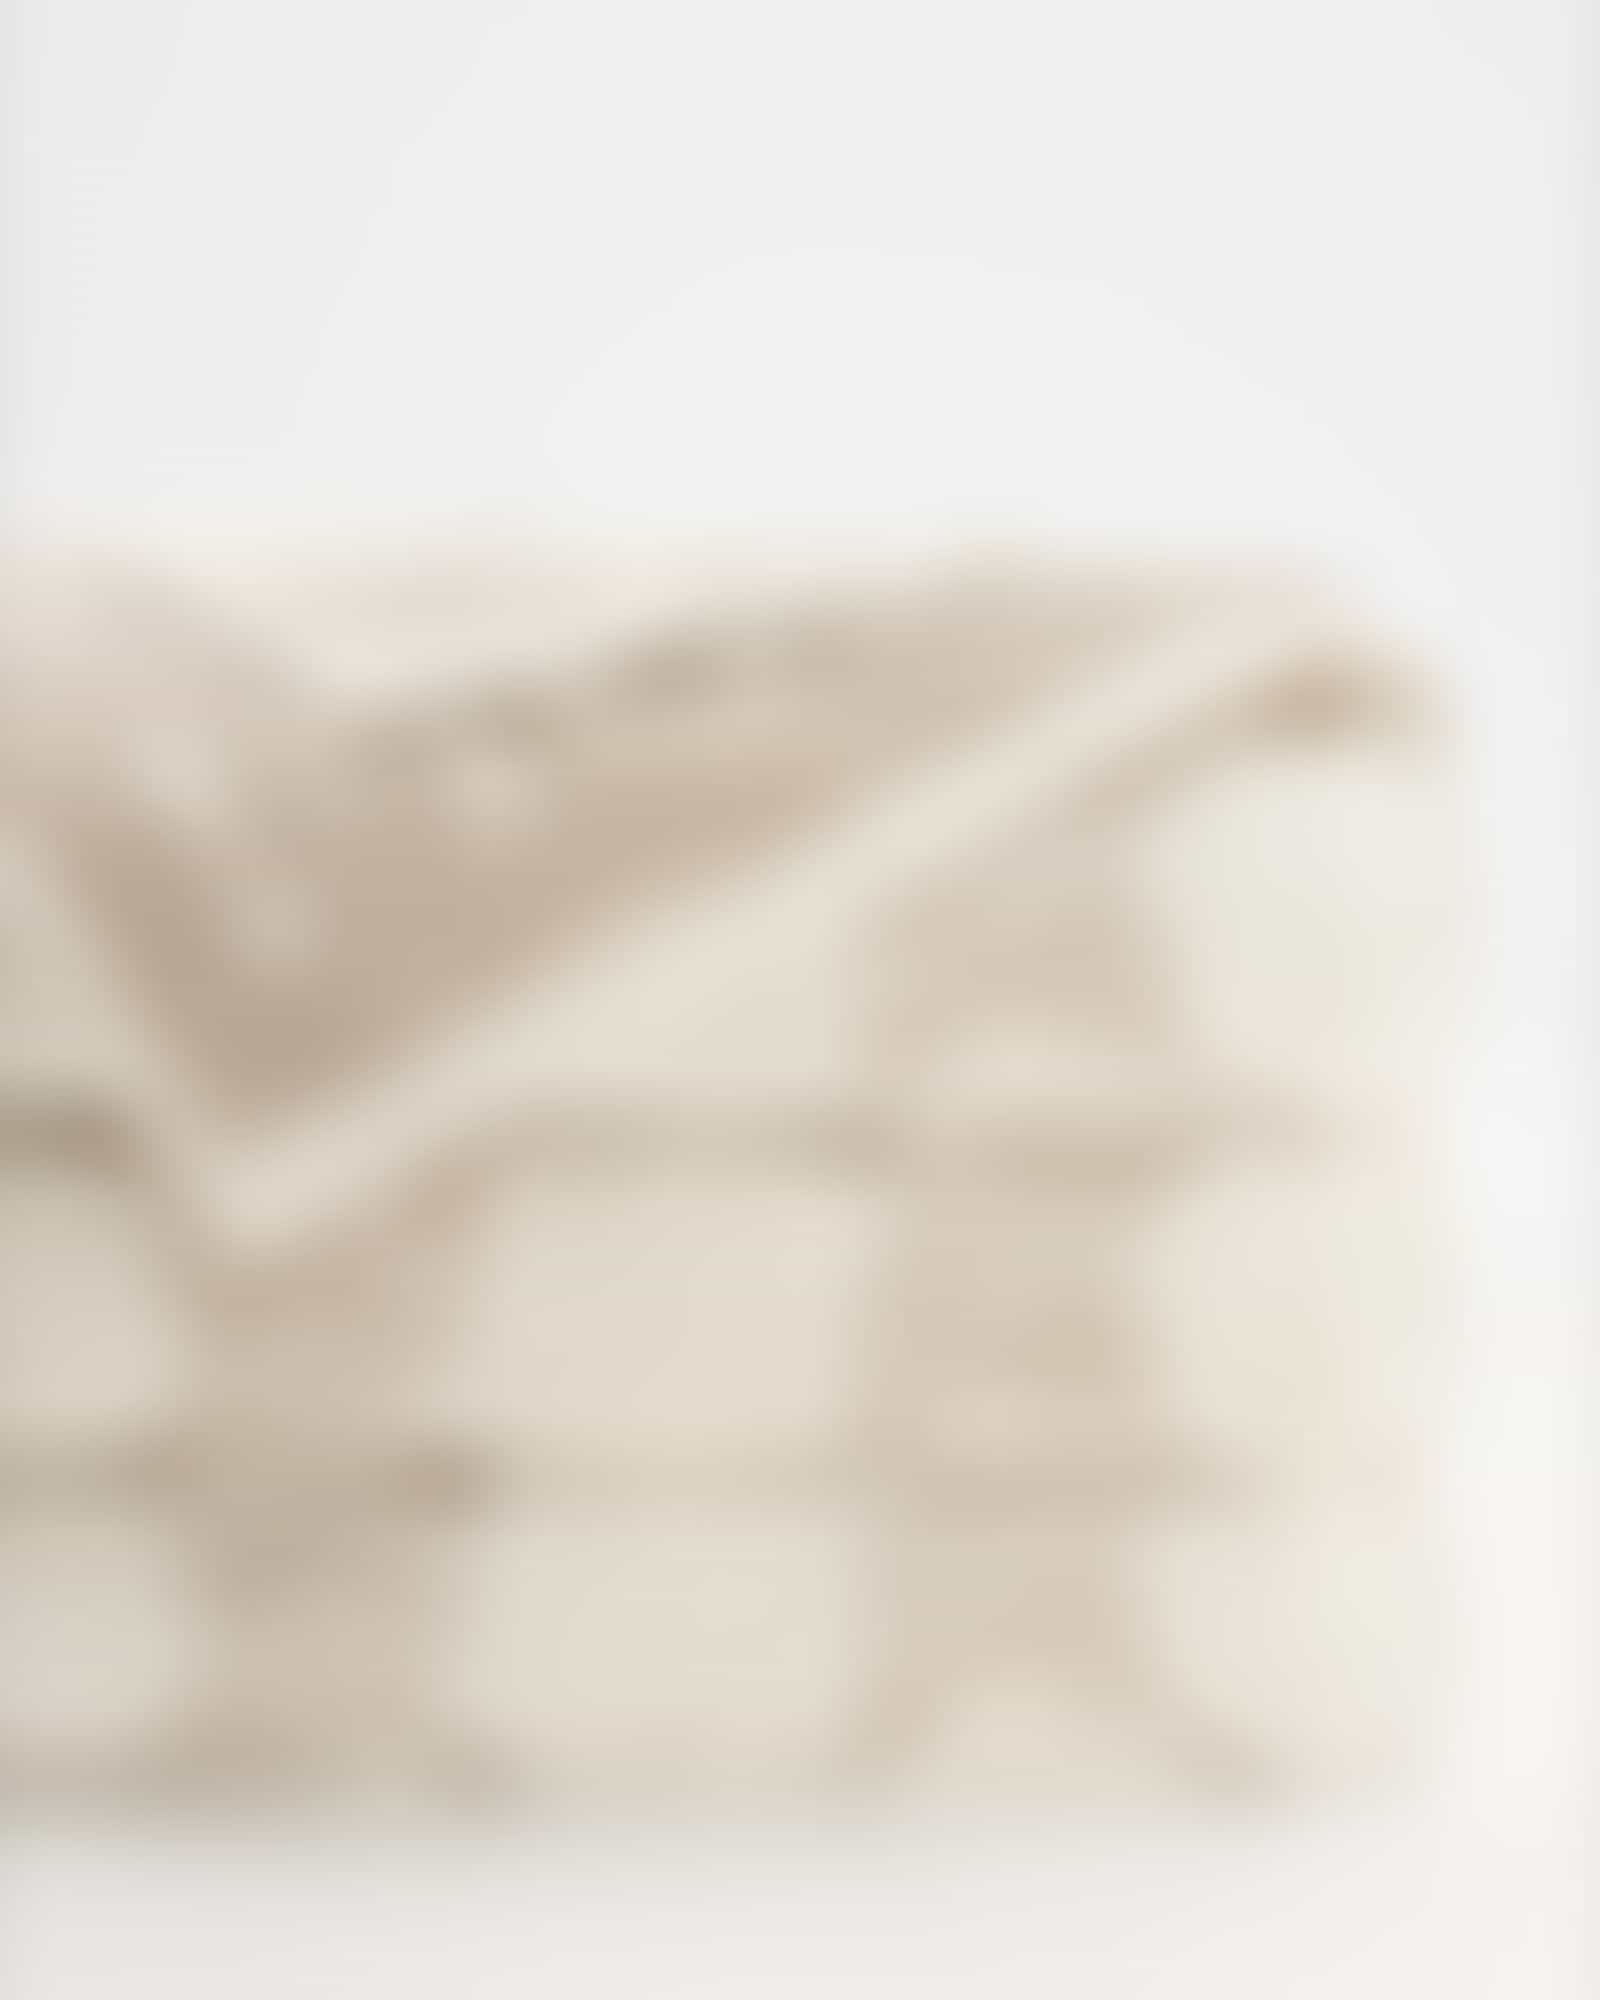 JOOP! Classic - Cornflower 1611 - Farbe: Creme - 36 - Handtuch 50x100 cm Detailbild 2